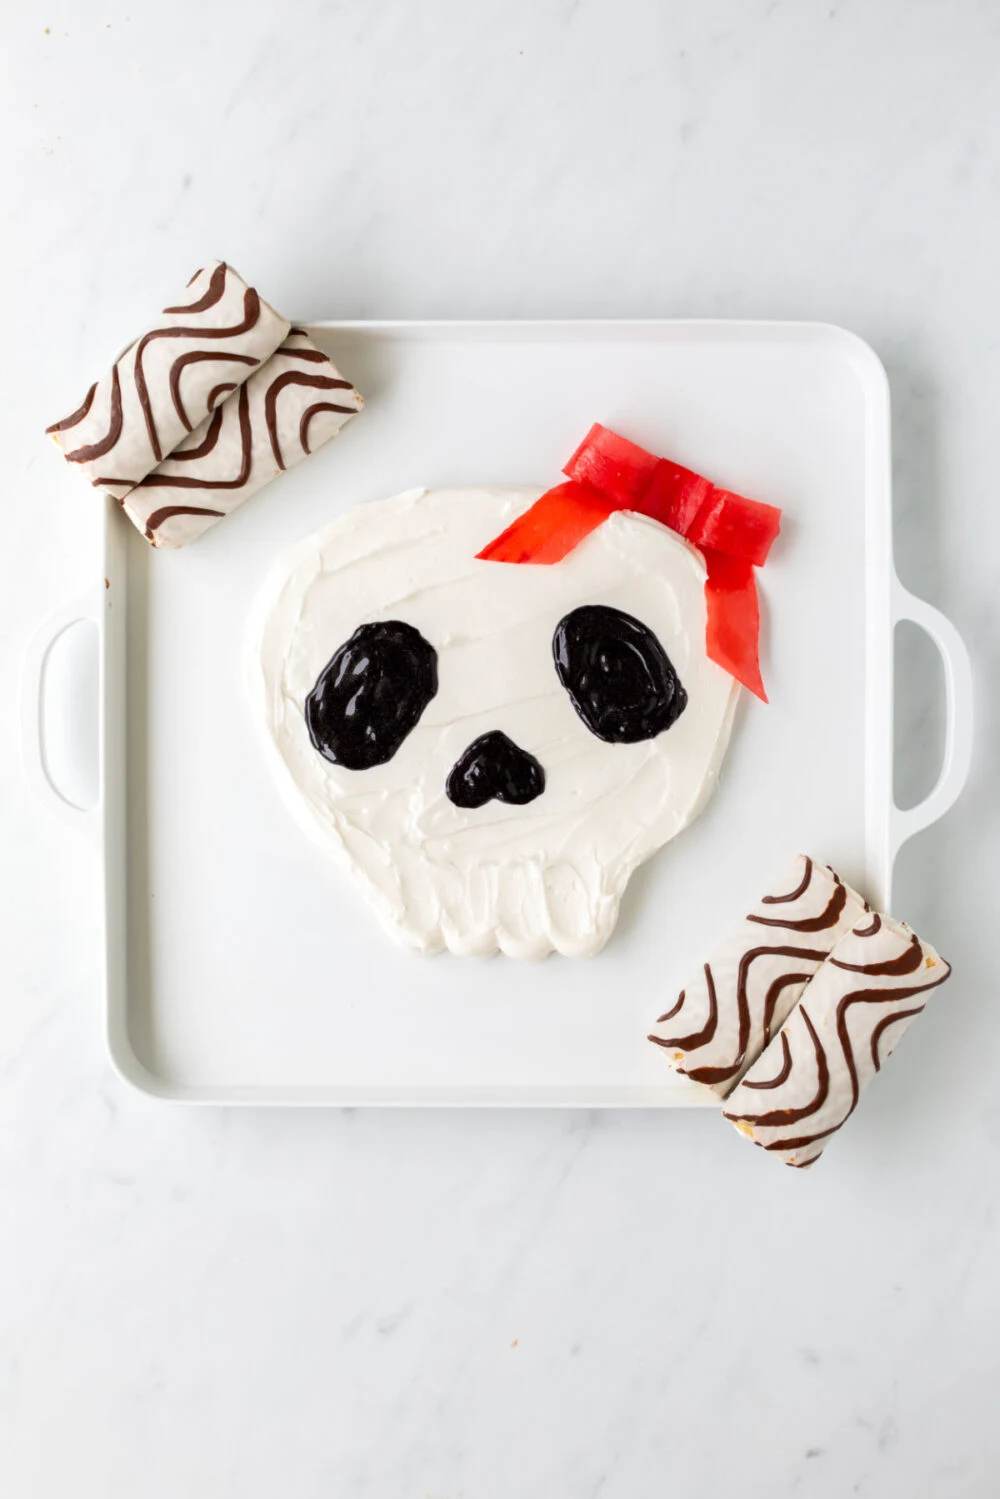 Halloween Skull Cakes